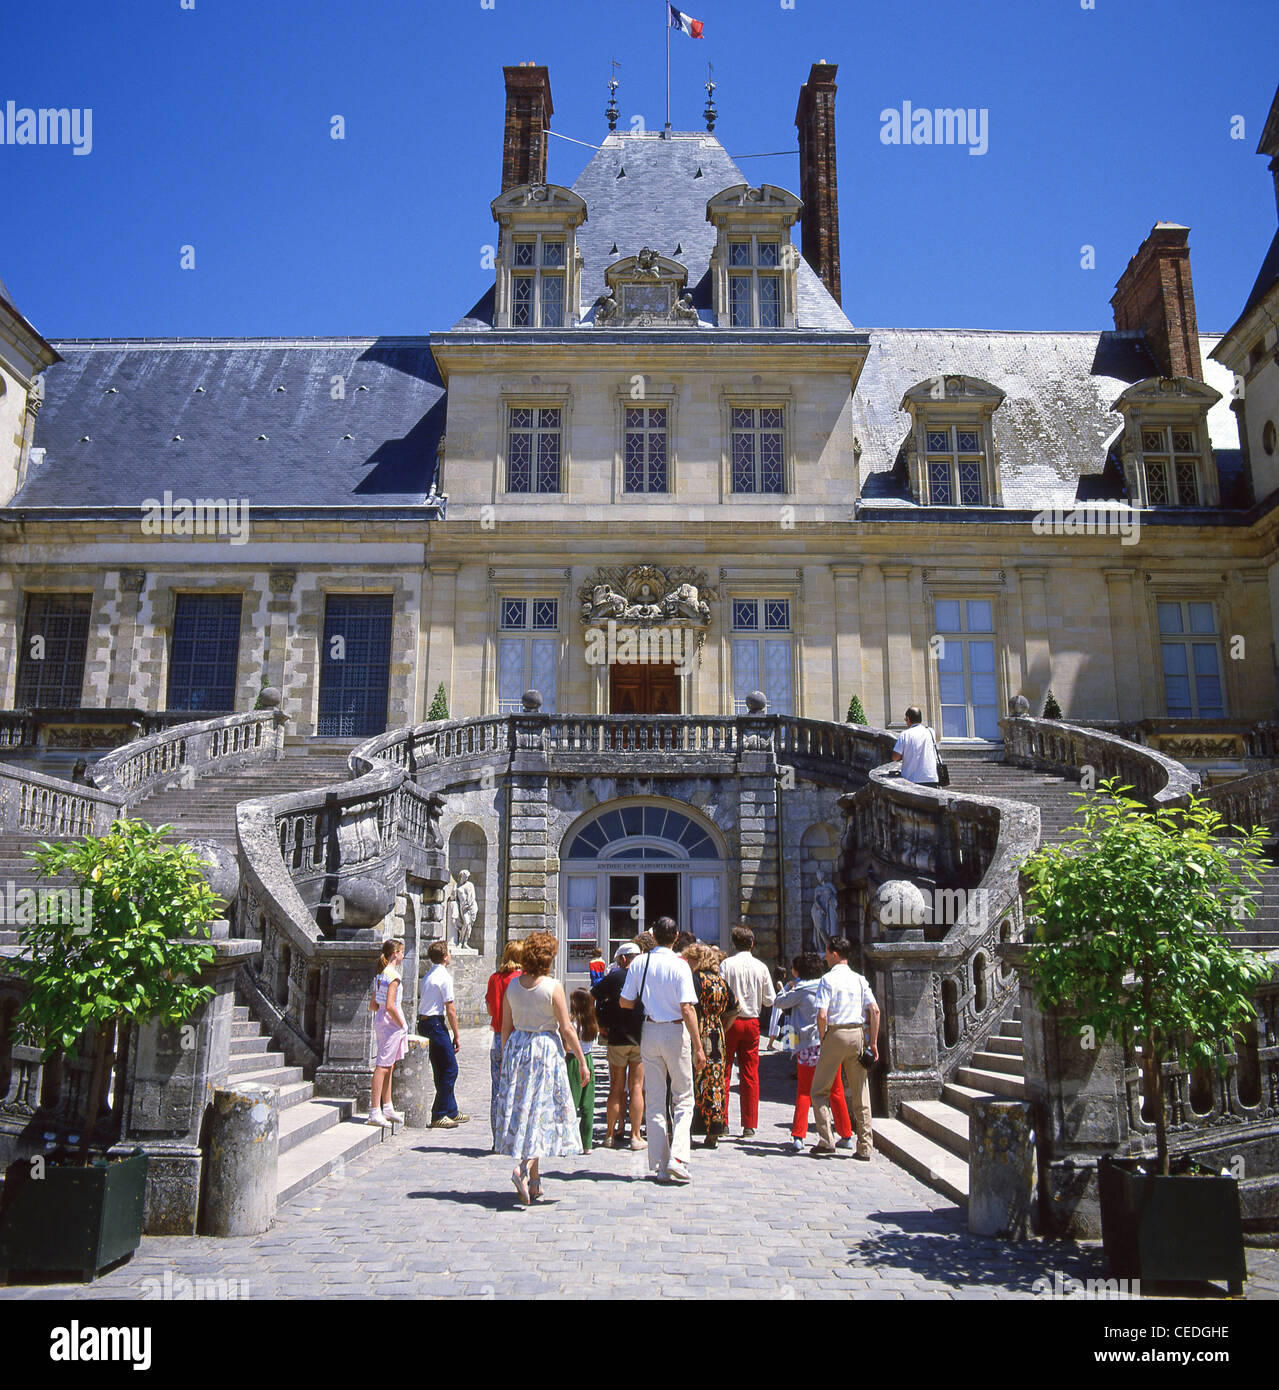 Château de Fontainebleau - The Paris Experiment